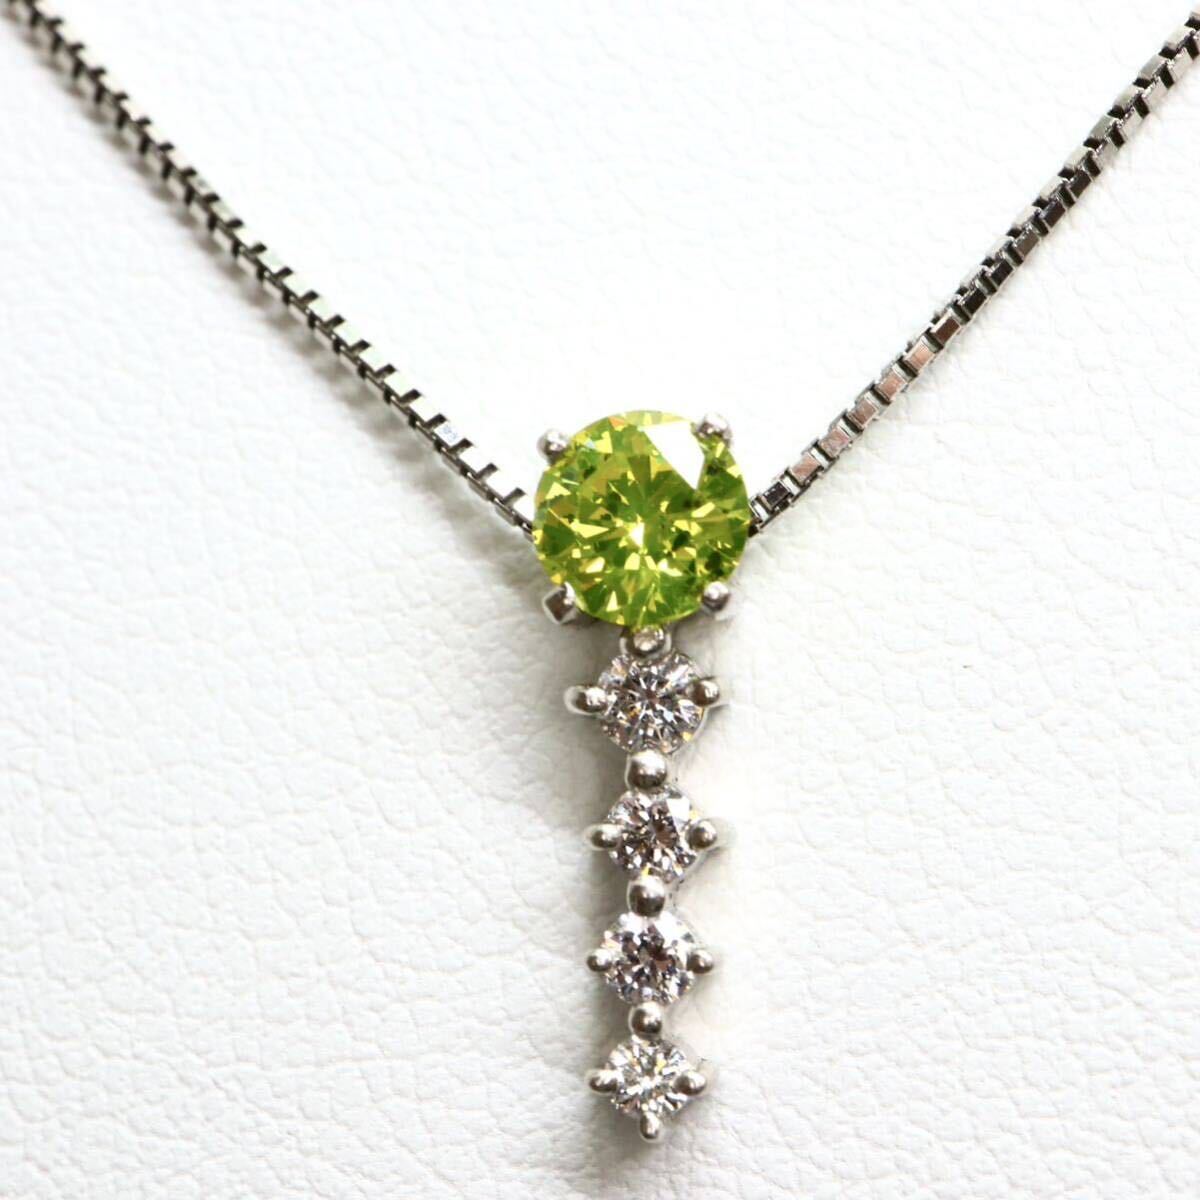 ソ付き!!《Pt900/Pt850天然ダイヤモンドネックレス》A 約3.7g 約44.5cm 0.14ct 0.395ct diamond necklace ジュエリー jewelry EB9/Eの画像1